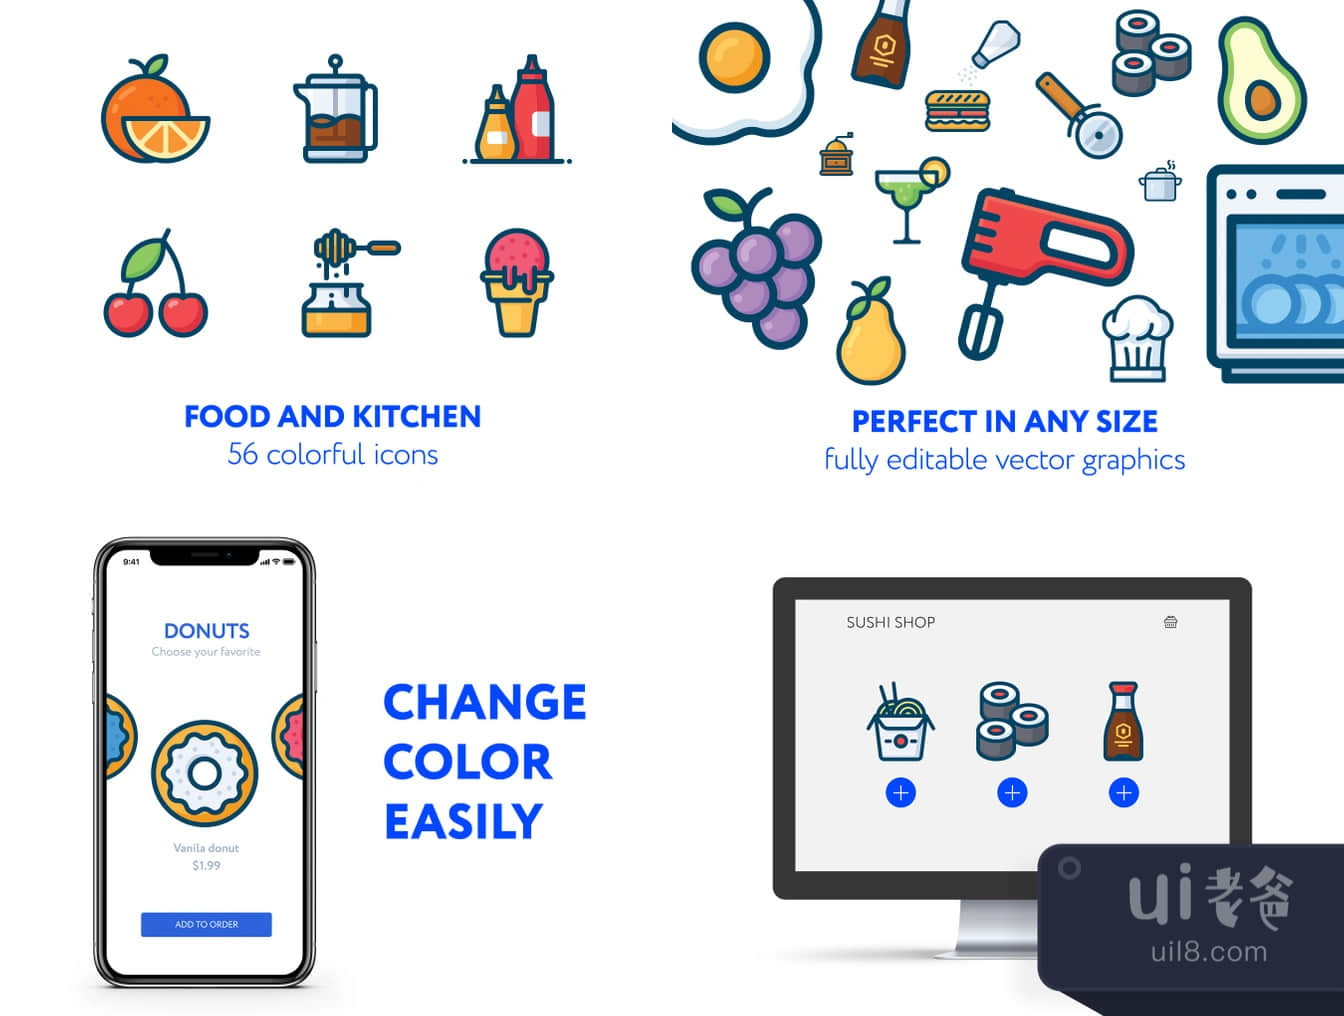 食品和厨房图标 (Food & kitchen icons)插图1